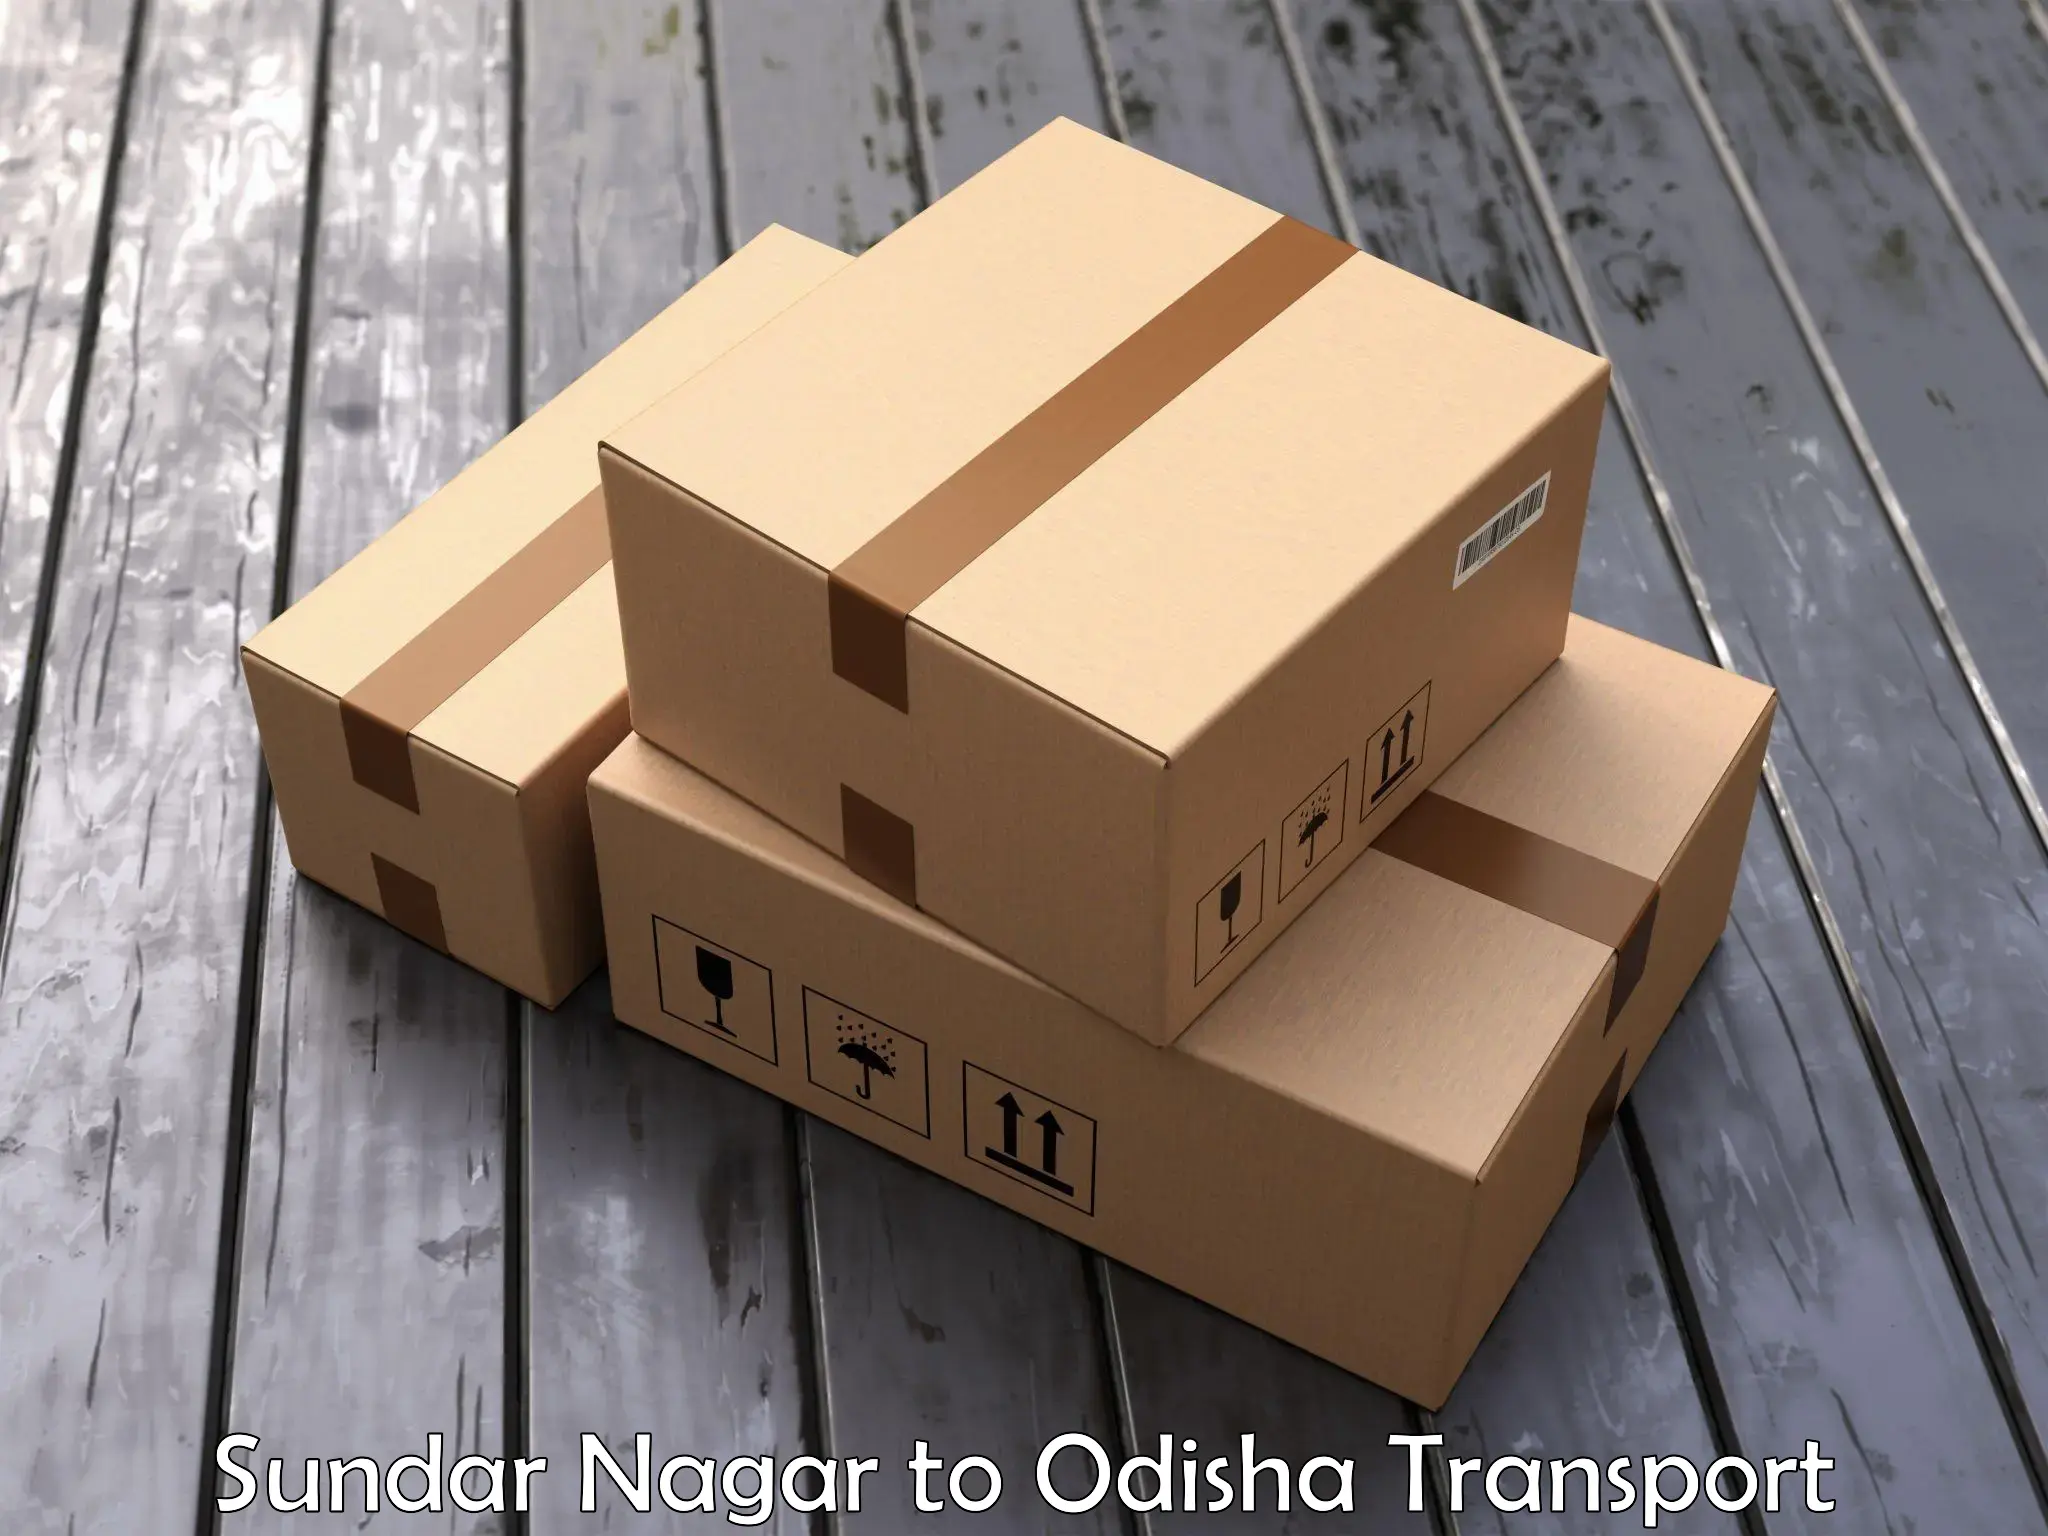 Part load transport service in India Sundar Nagar to Raighar